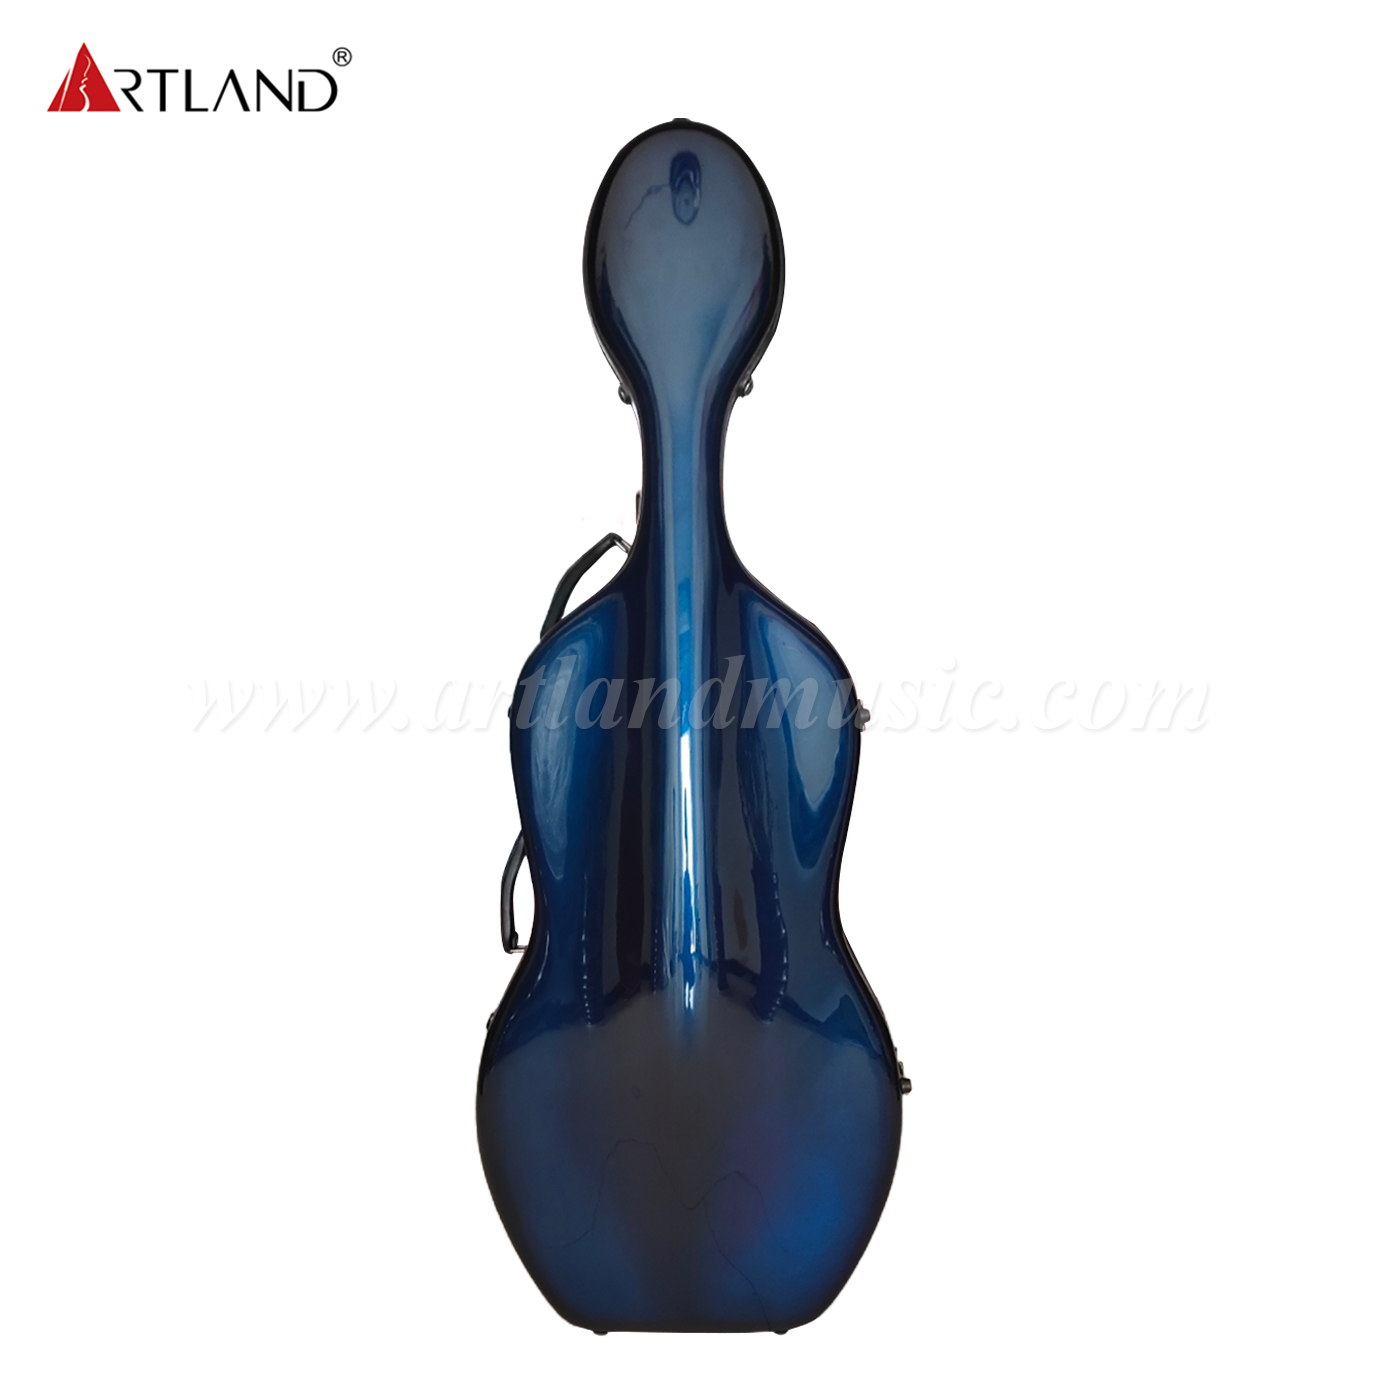 Estuche para violonchelo de fibra de carbono degradado de azul a morado (CSC602C)